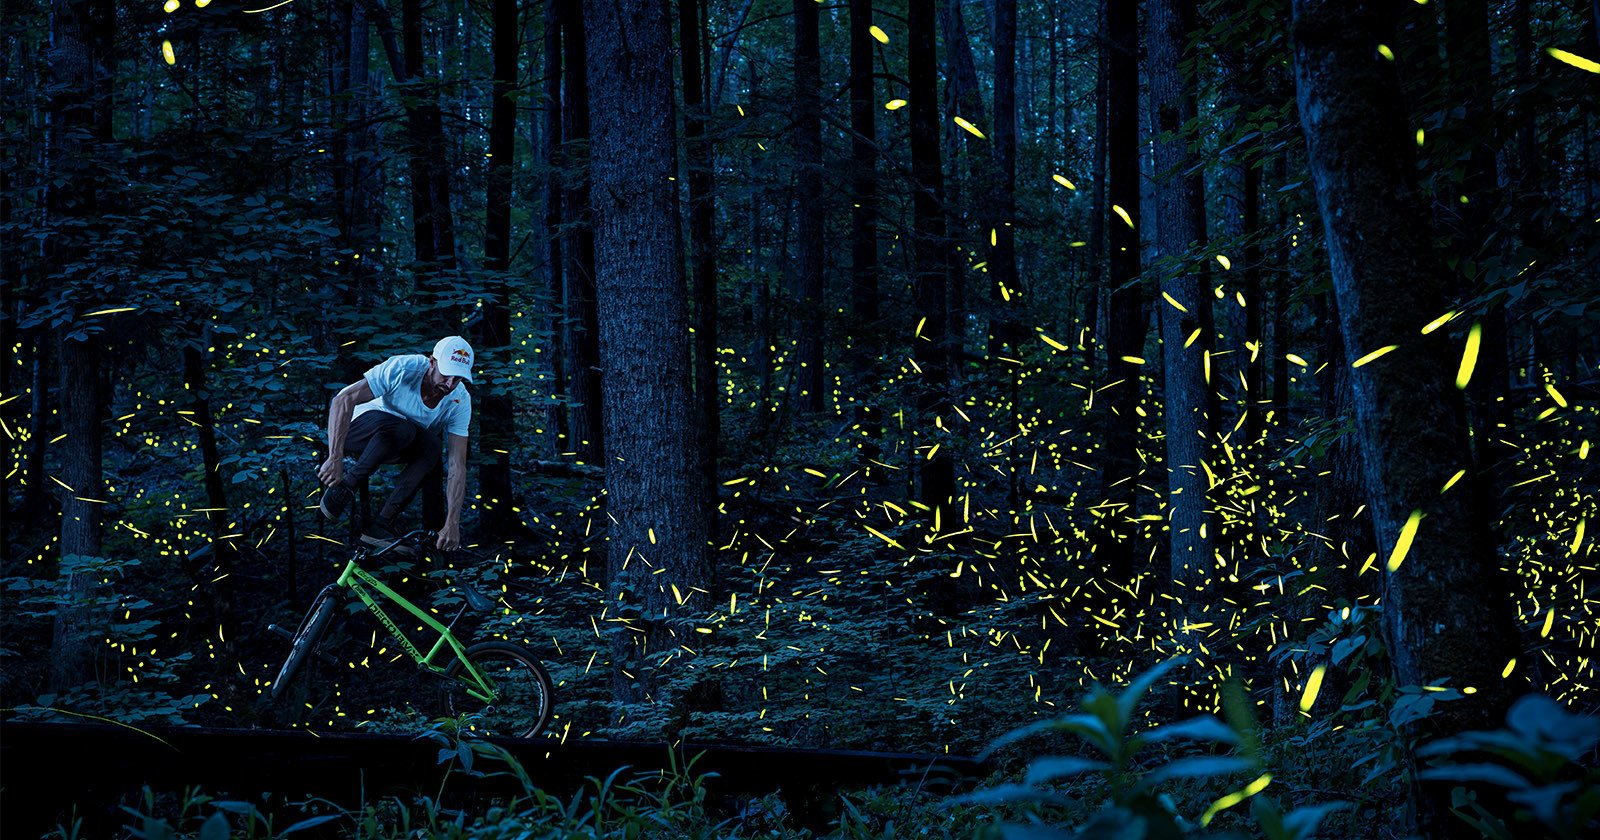 BMX Biker Captured Among Glowing Clouds of Fireflies